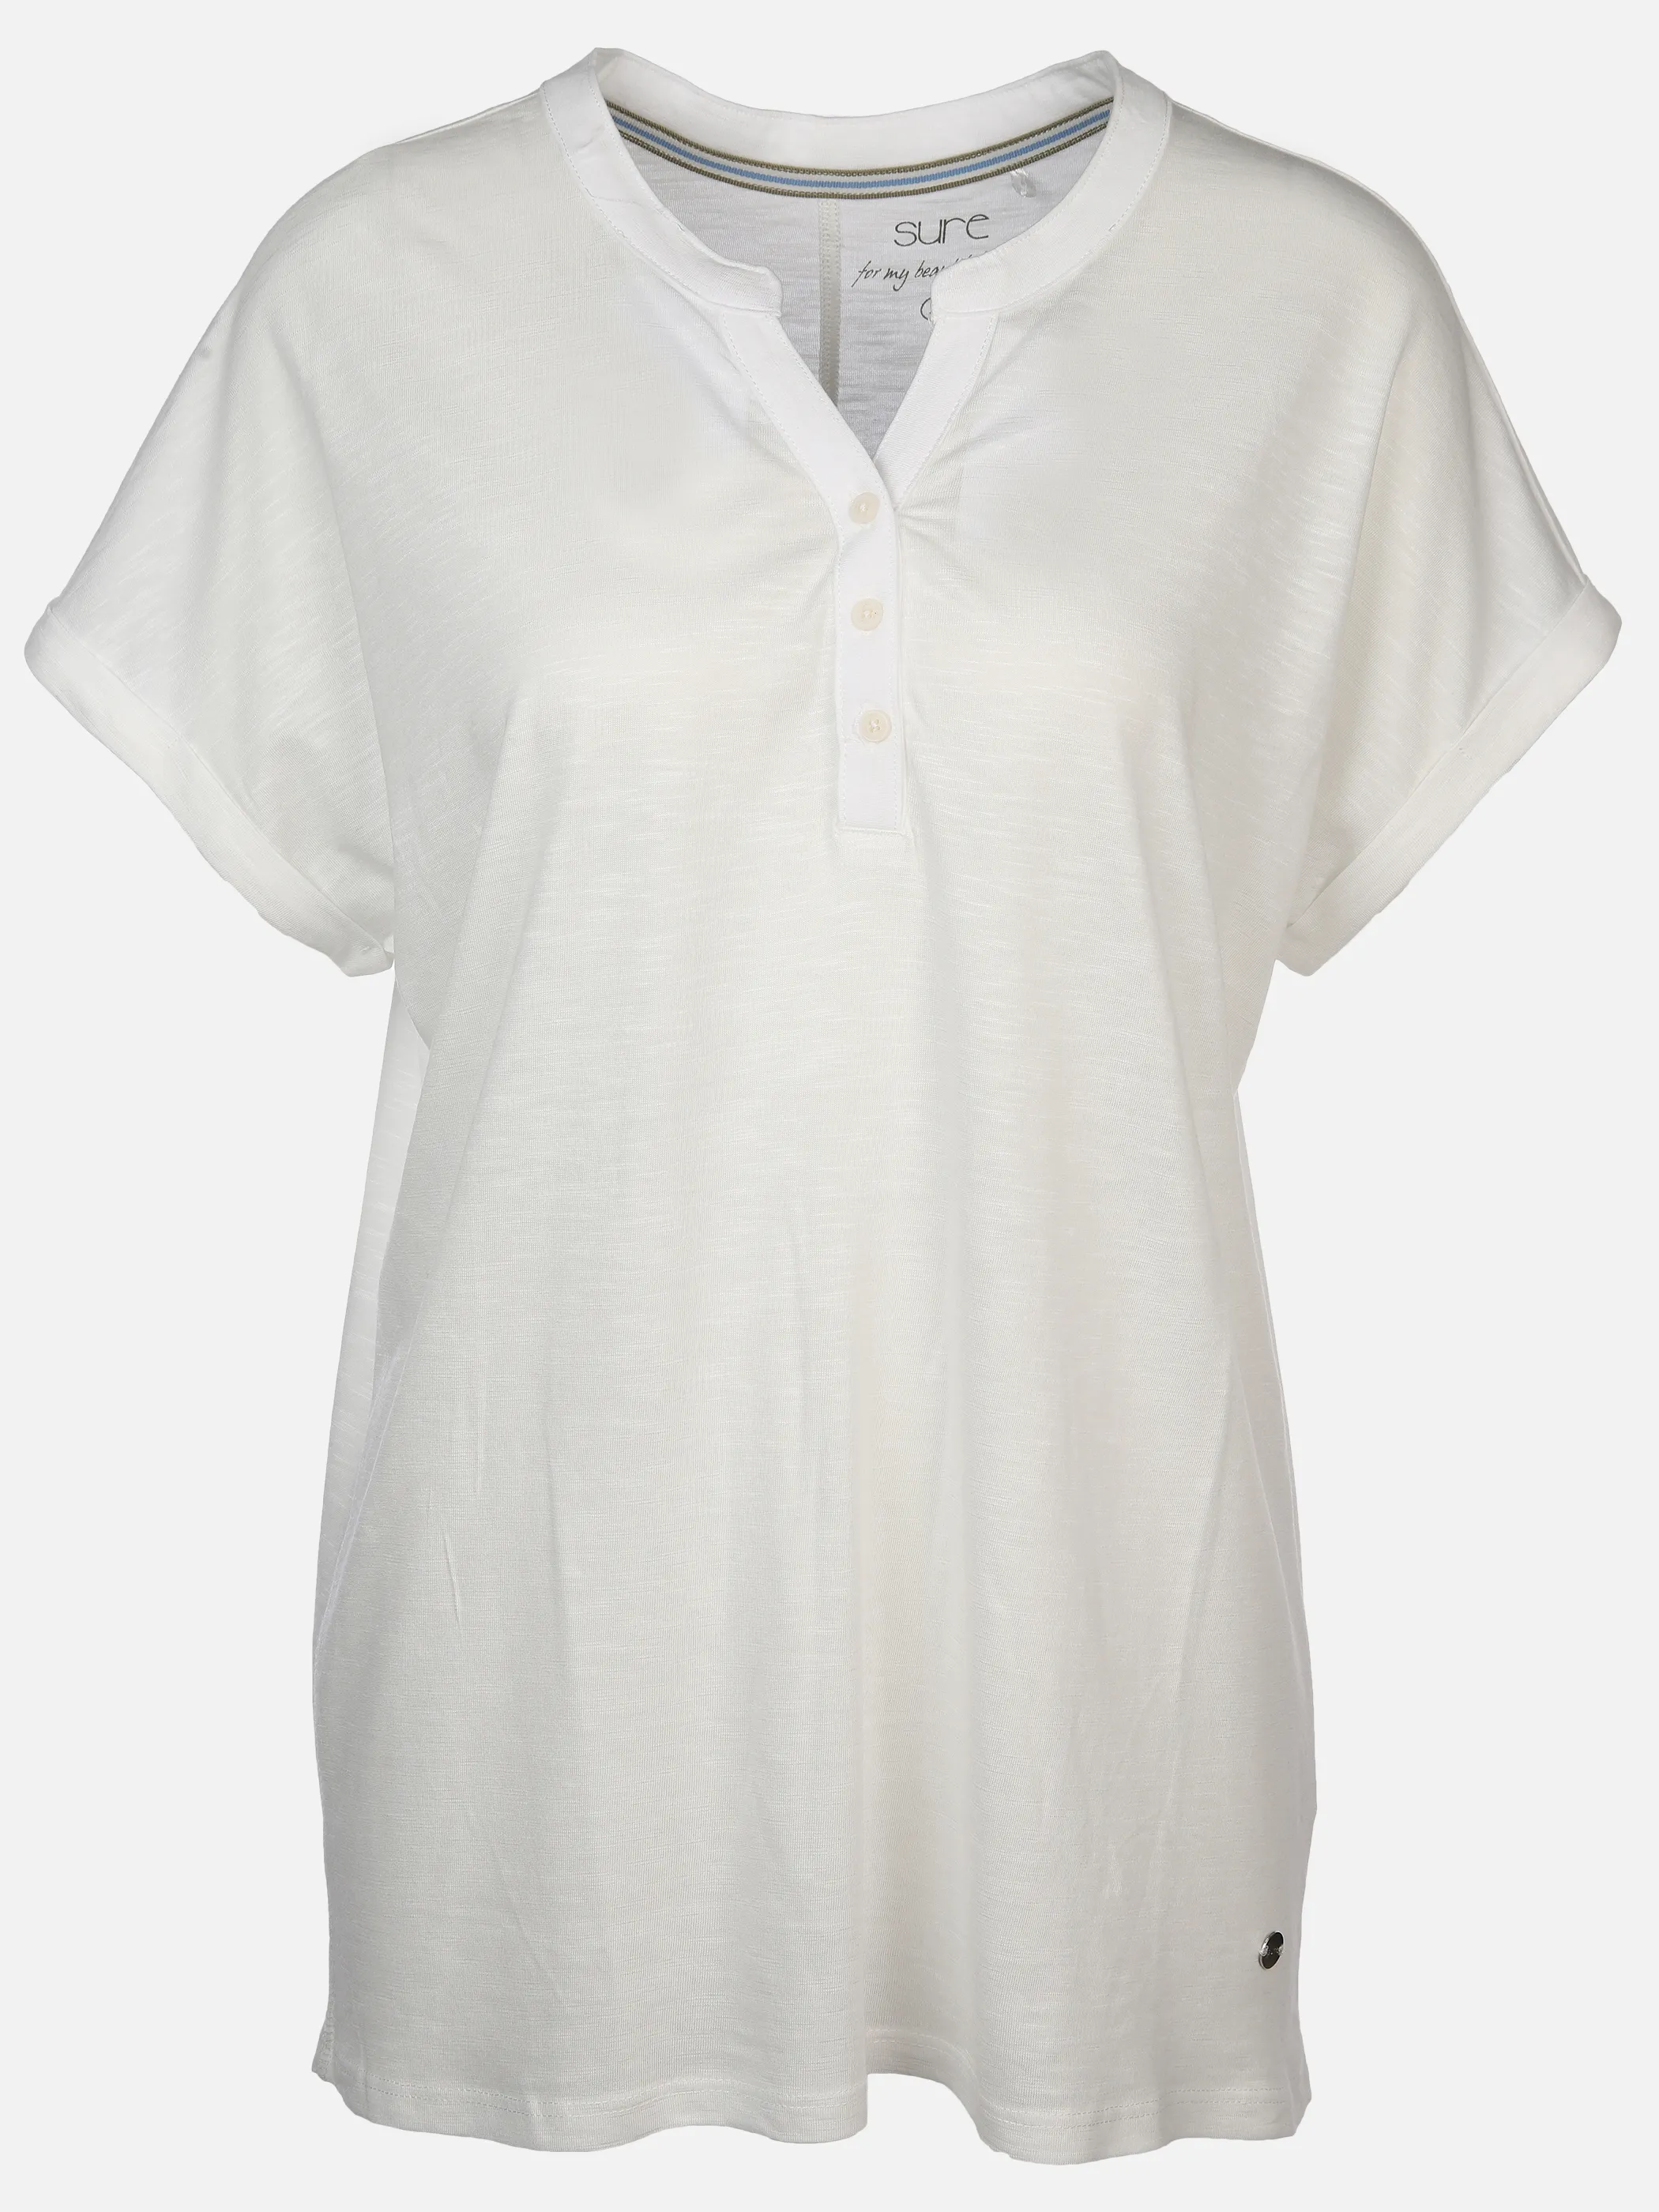 Sure Da-Jersey-T-Shirt Weiß 890358 OFFWHITE 1